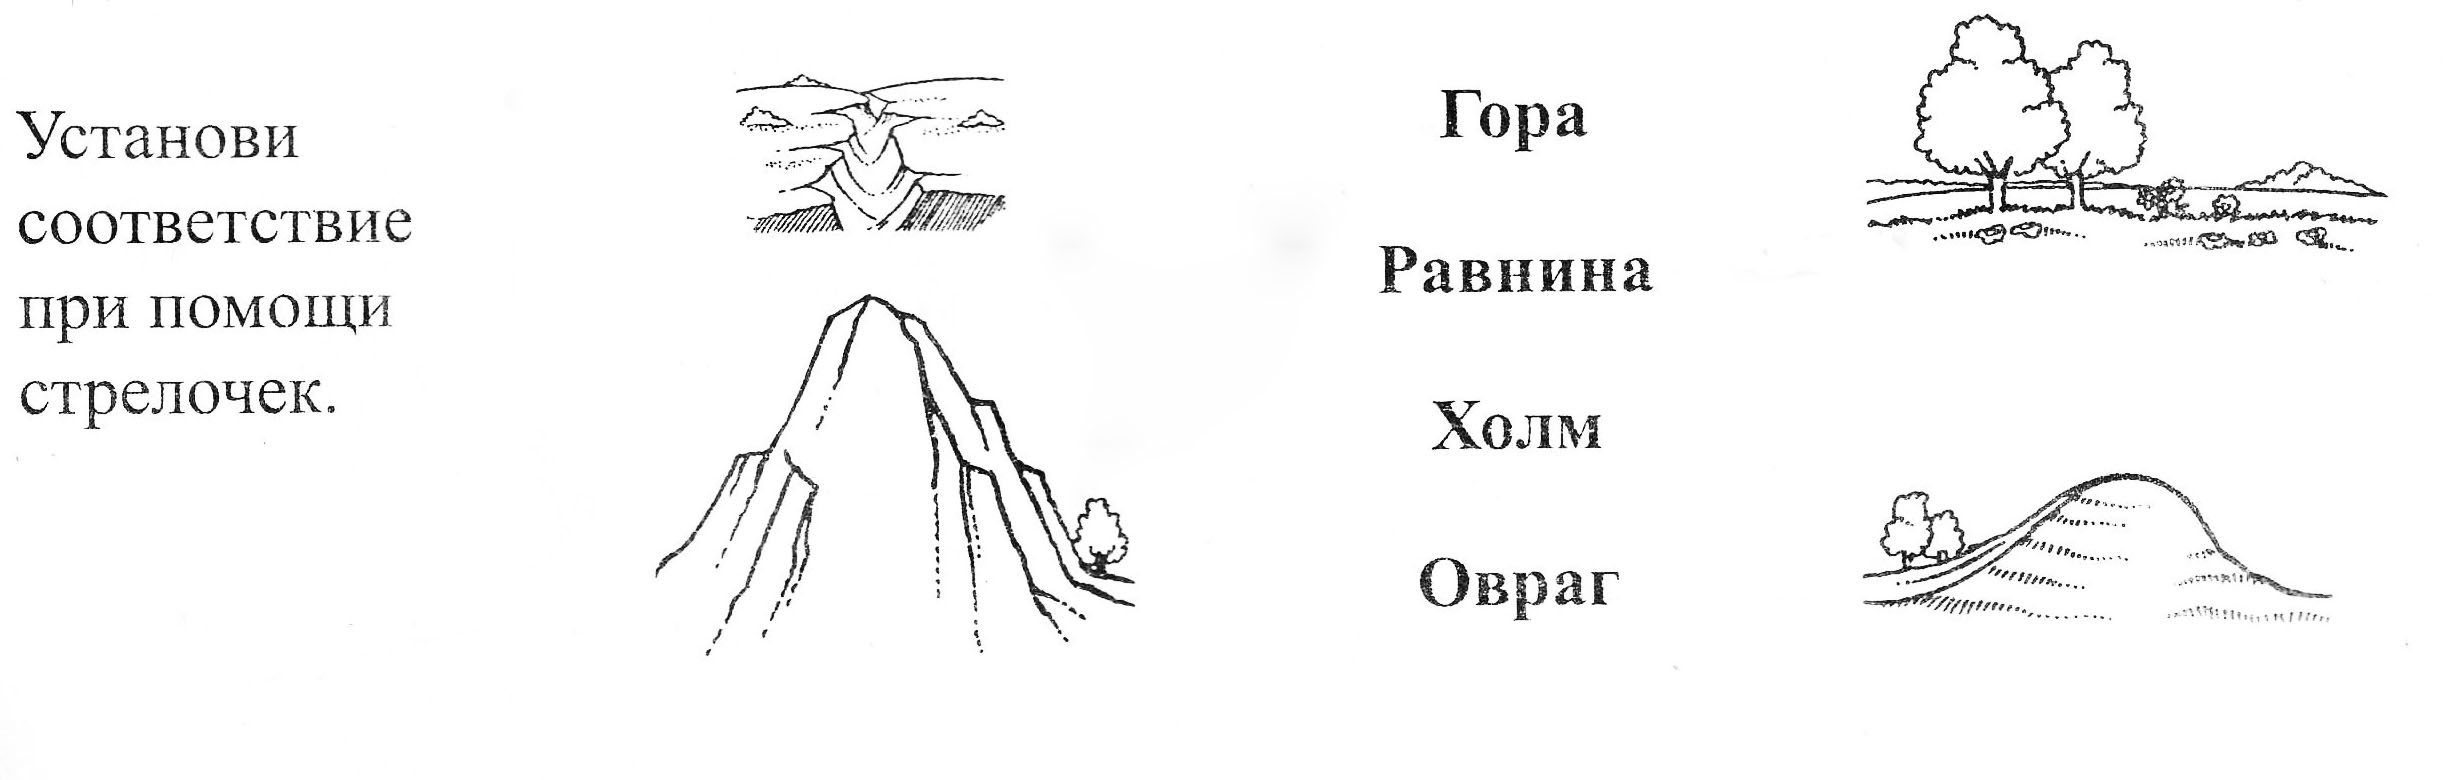 Схематическое изображение холма